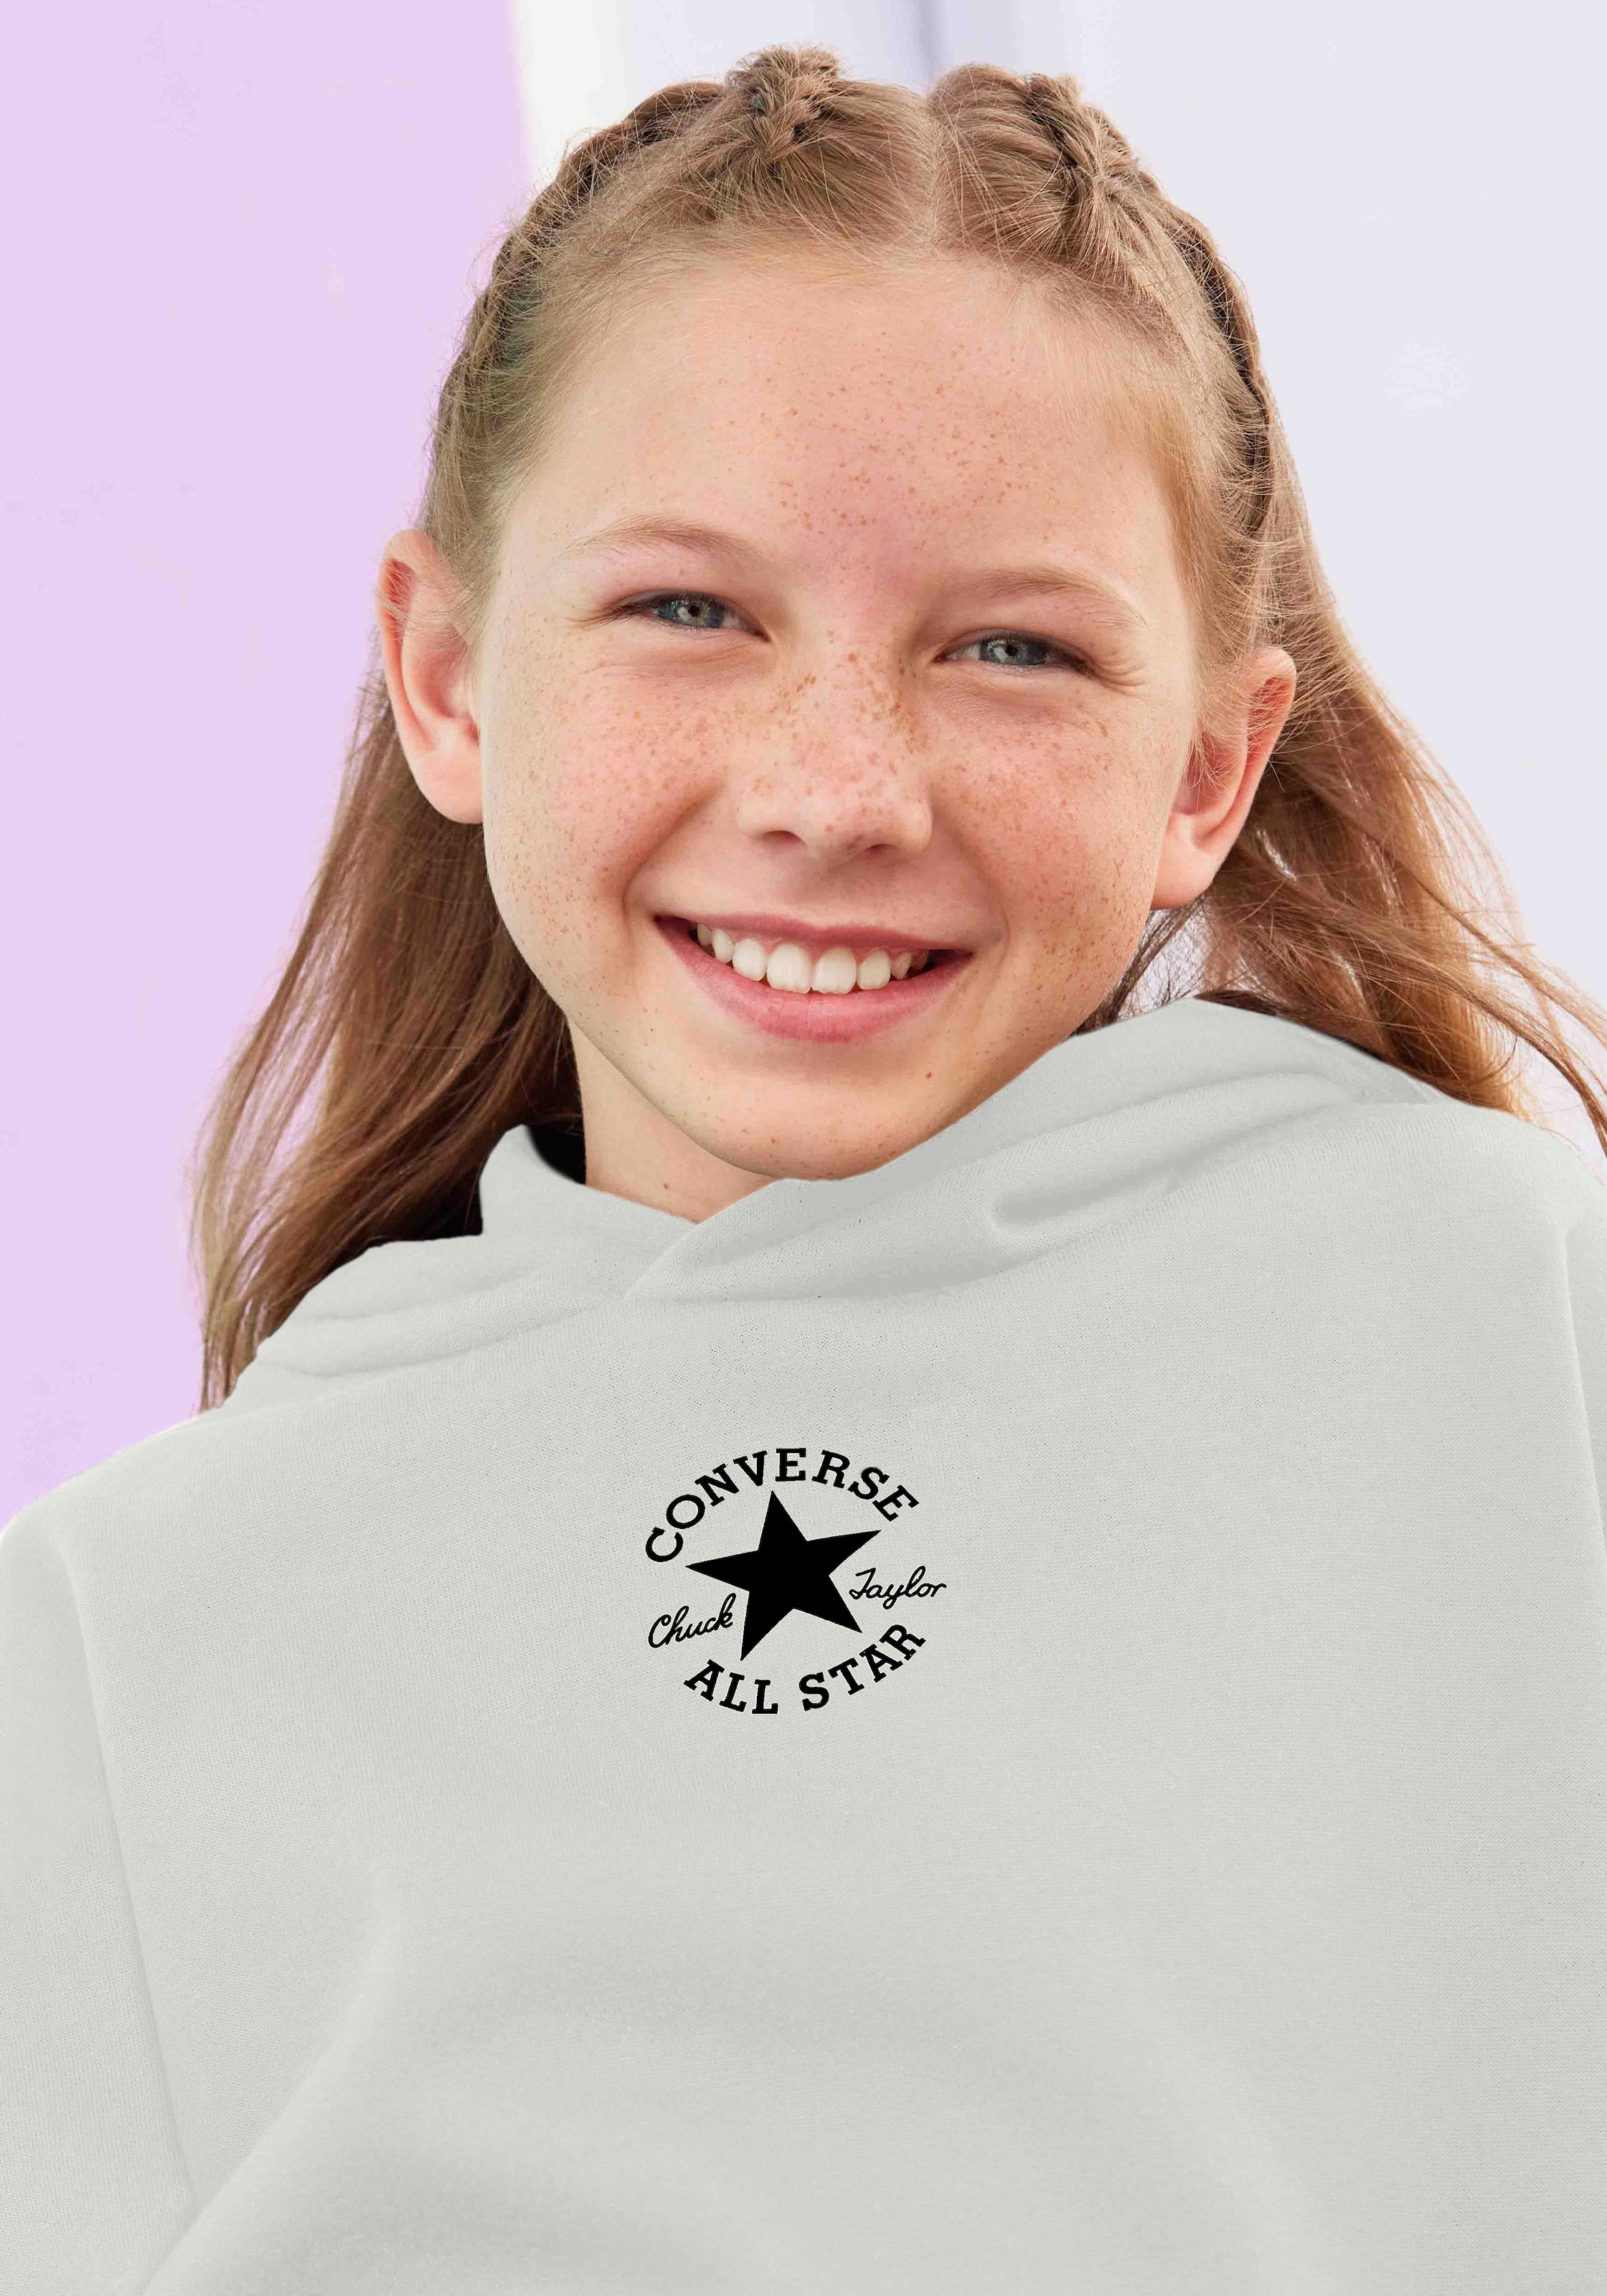 Converse Kapuzensweatshirt »für Kinder«